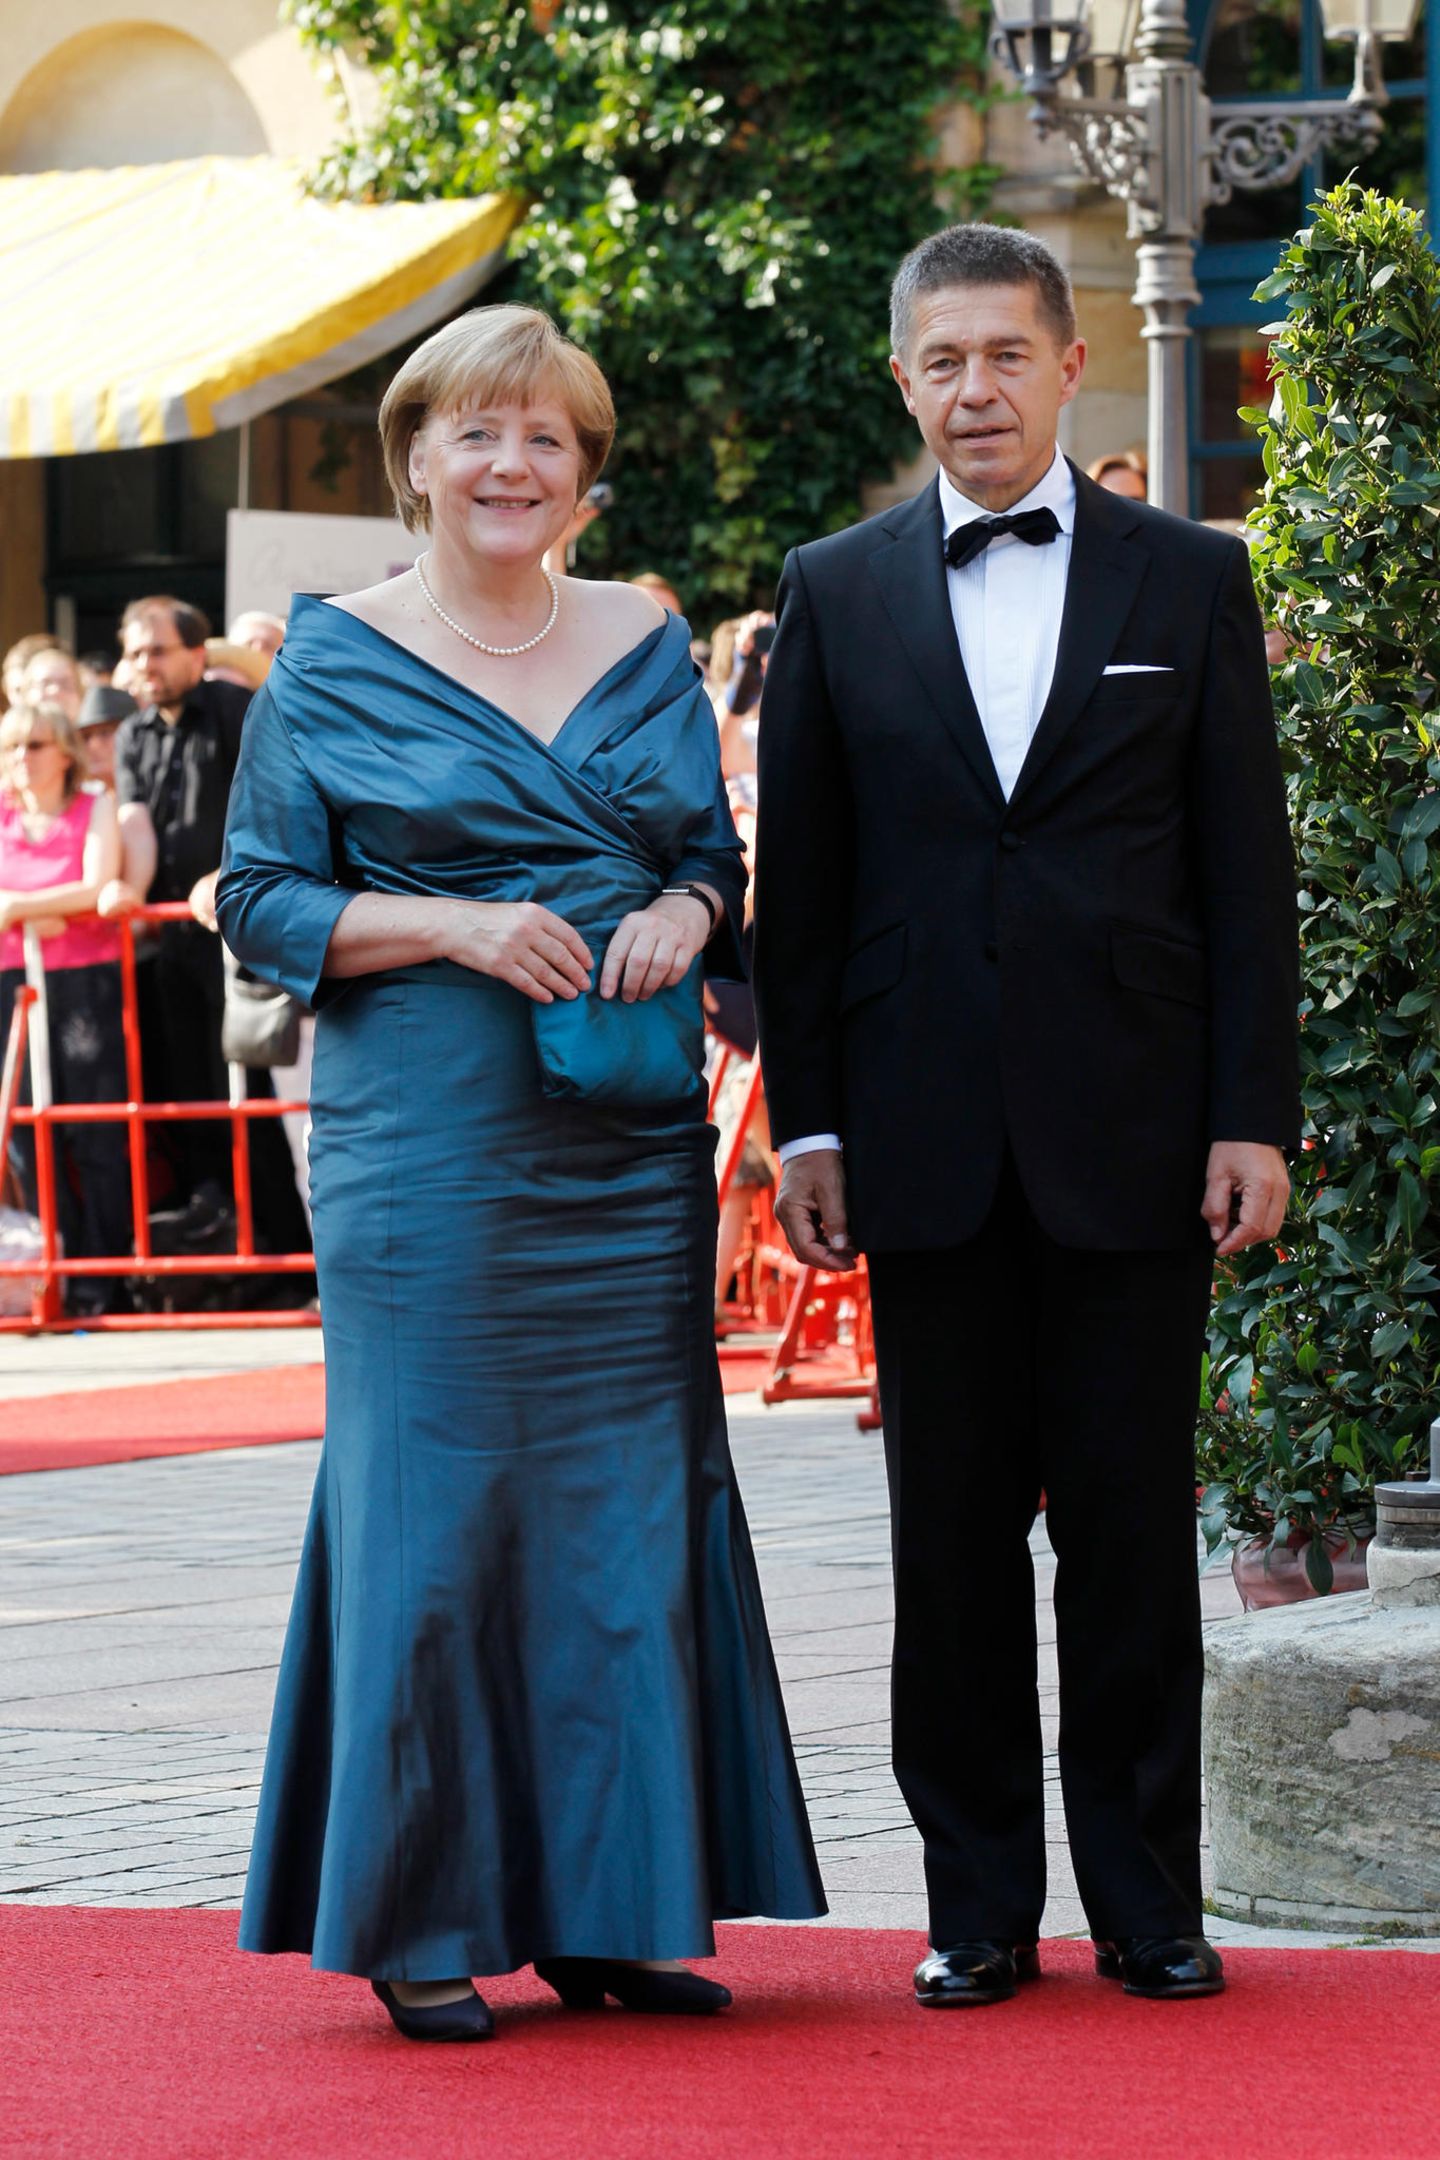 Angela Merkel und Joachim Sauer posieren auf dem Red Carpet für die Fotografen.